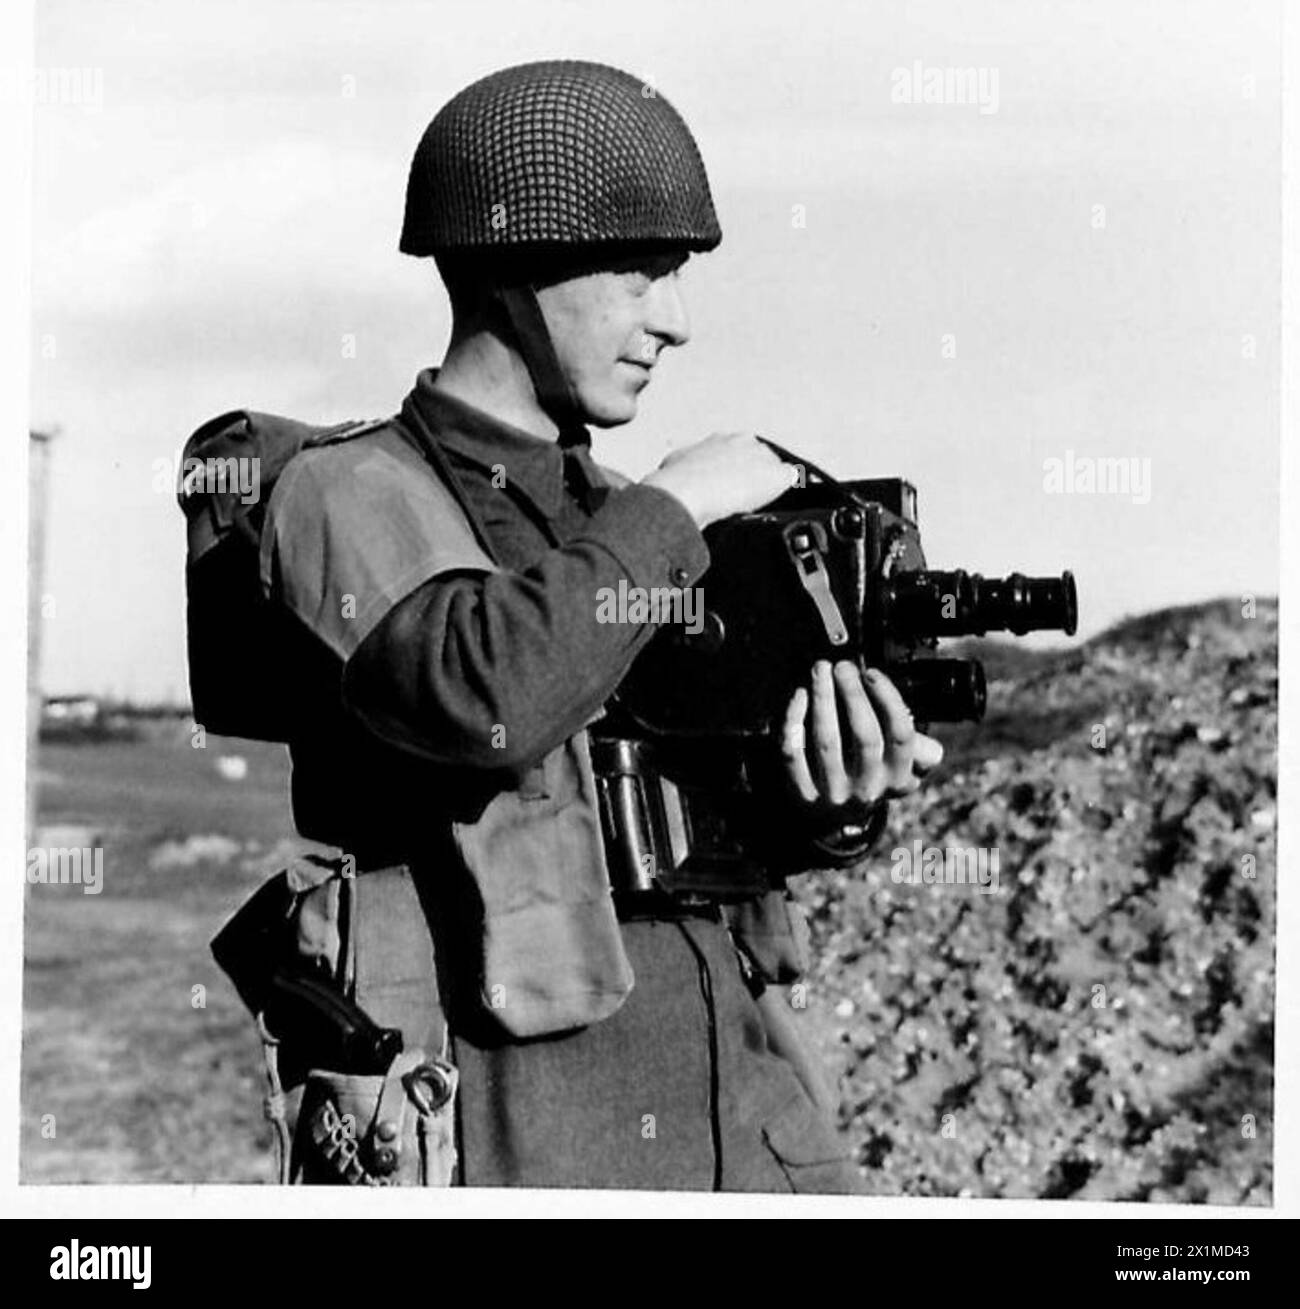 ARMY FILM & PHOTO UNIT KAMERAMANN - 14598194 - Sergeant Rennison, G.O., von der Durham Light Infantry. Er lebt in 14 Hillview Gardens, Alexandra Road, Sunderland und war Journalist im zivilen Leben. Er wurde während der ersten Phase der Kämpfe in der Normandie bei der britischen Armee verwundet Stockfoto